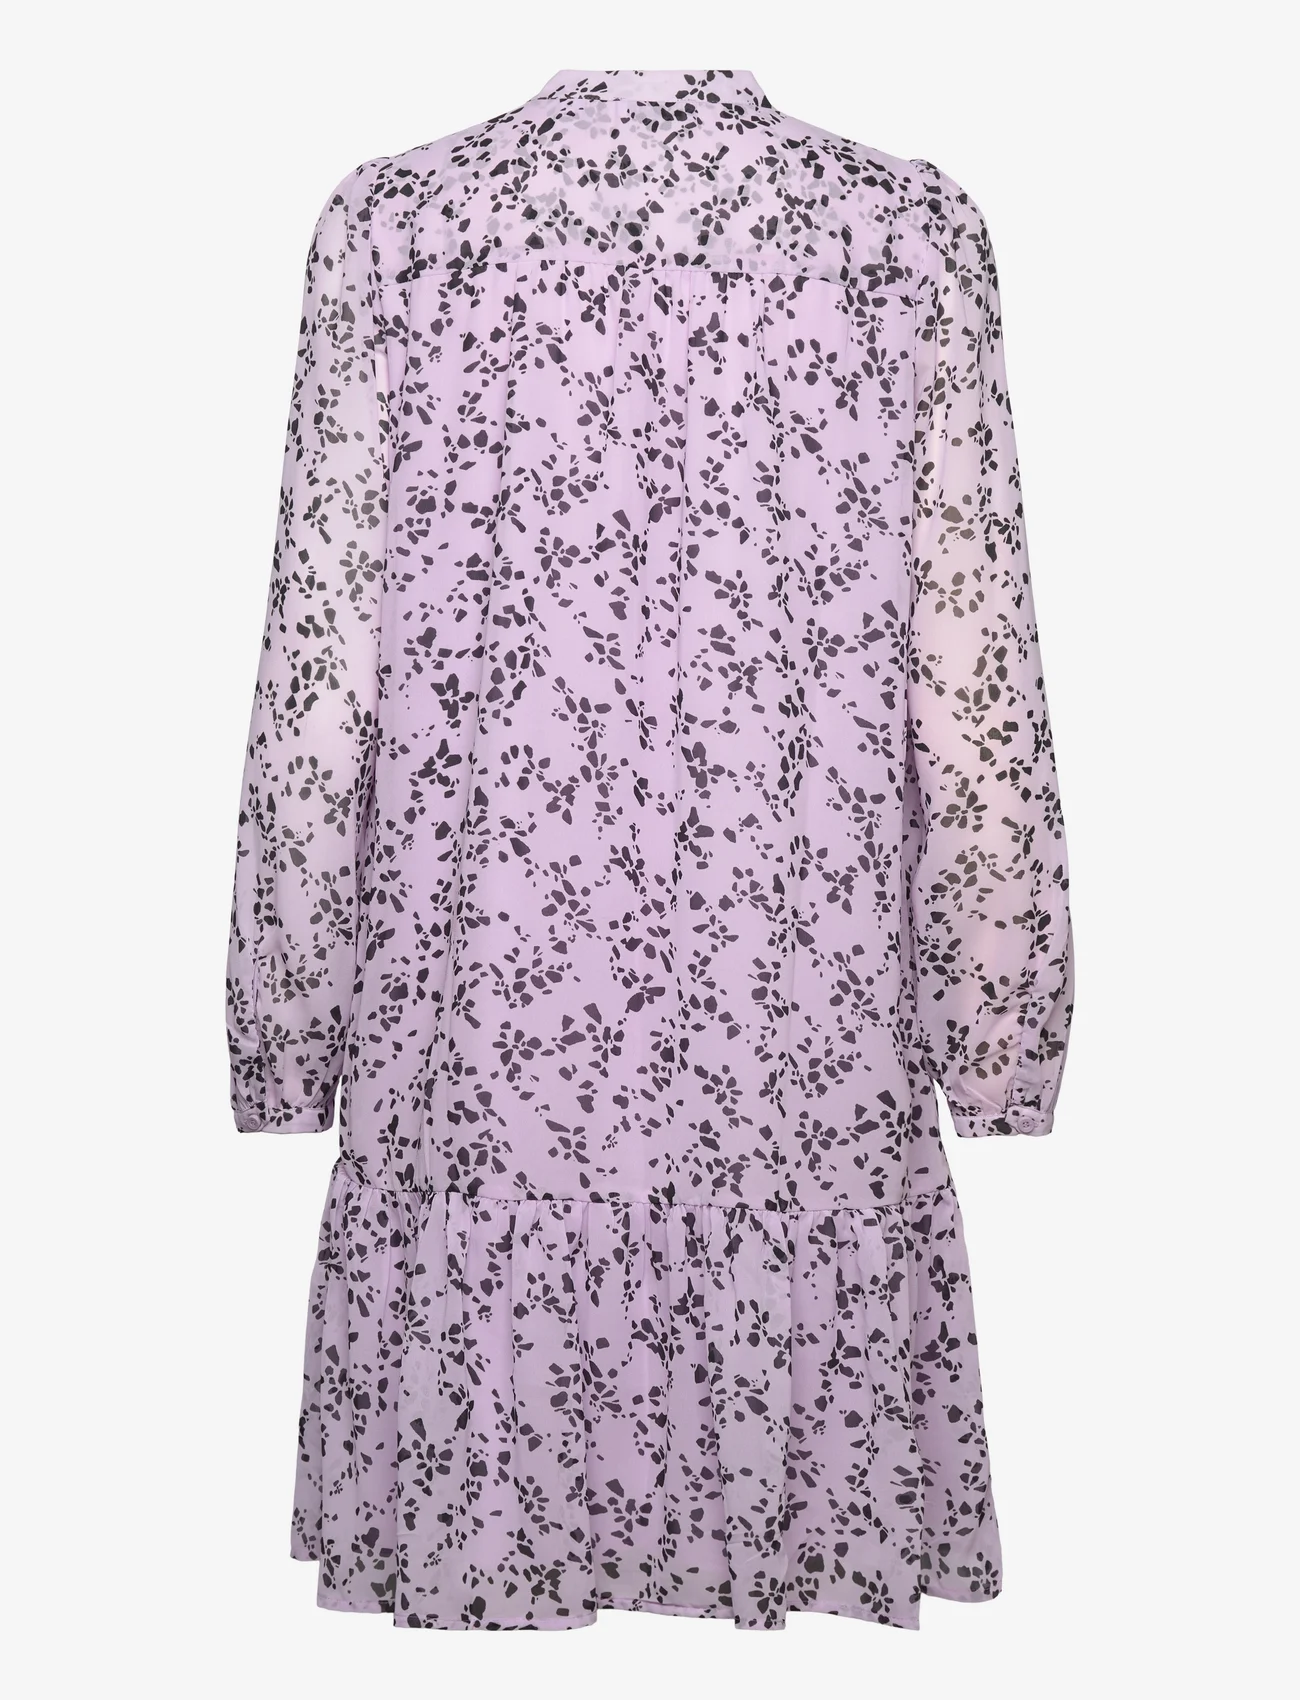 Esprit Casual - Dresses light woven - sommerkjoler - lavender 4 - 1